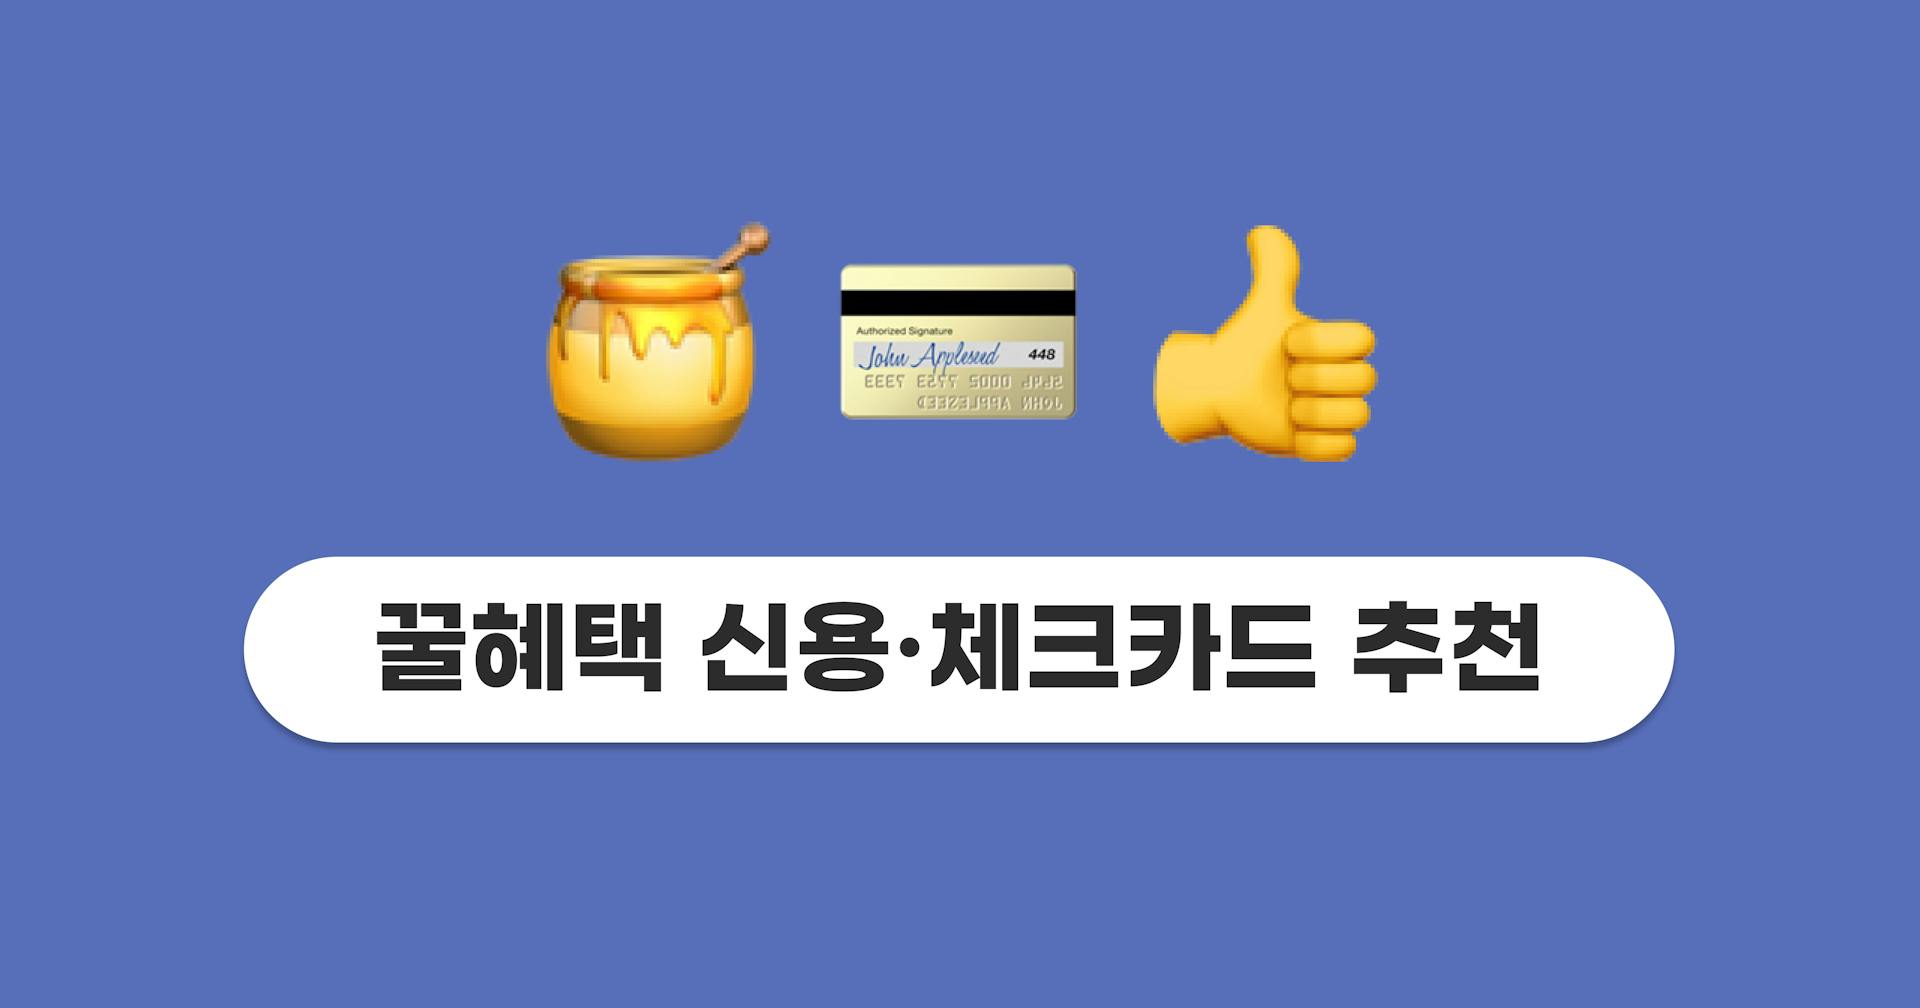 꿀혜택 신용카드 & 체크카드 추천 TOP 3 (ft. OTT 할인 카드)